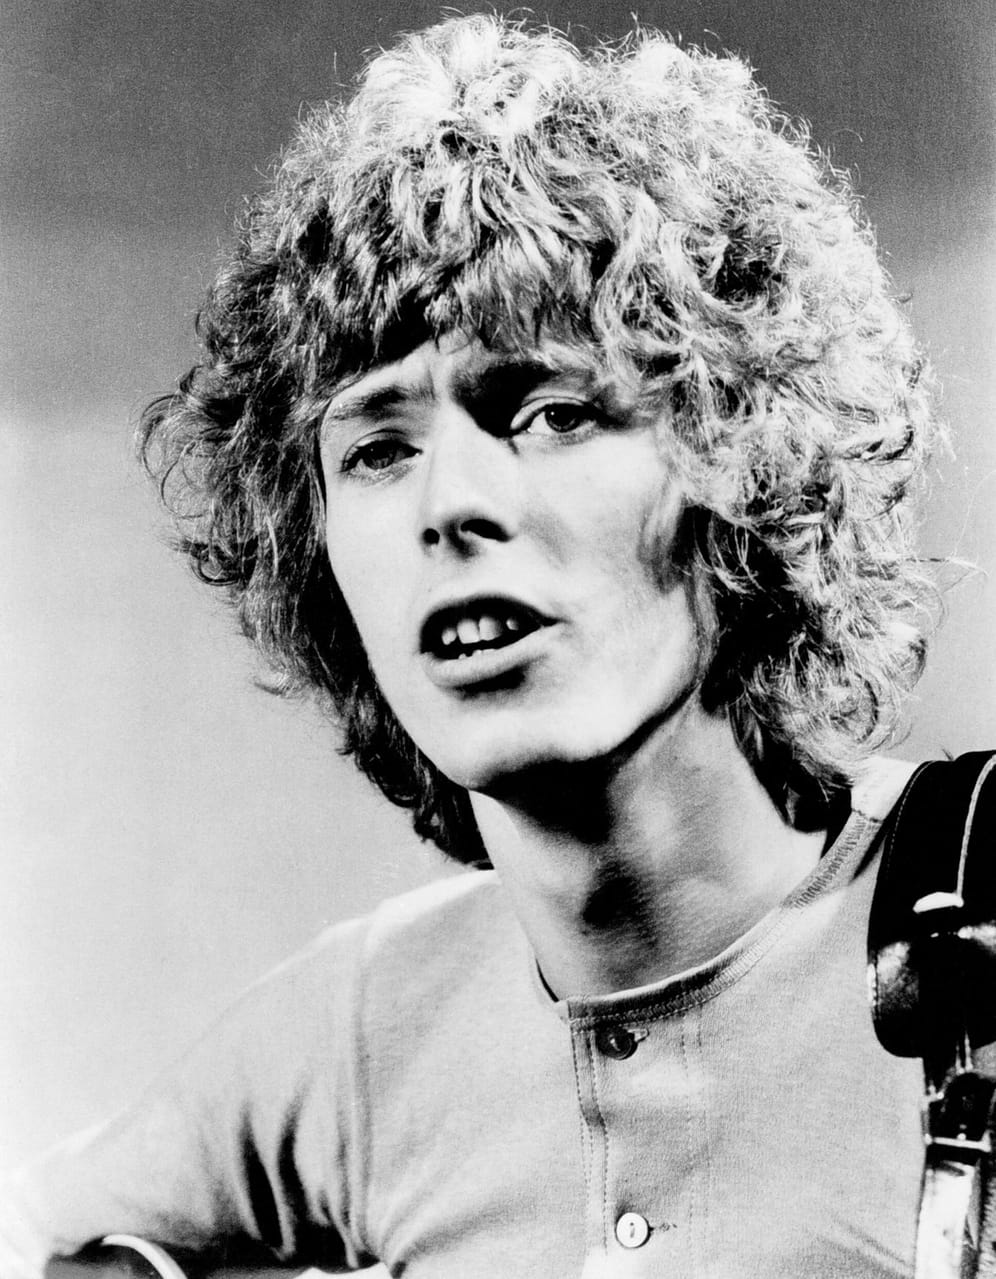 David Bowie wurde 1947 als David Robert Jones im Londoner Stadtteil Brixton geboren. Im Alter von neun Jahren kam er erstmals mit dem Rock'n'Roll in Berührung. In den 60er Jahren sammelte er Erfahrungen als Sänger und Musiker und legte sich den Künstlernamen zu. 1967 erschien sein Debüt-Album "David Bowie".